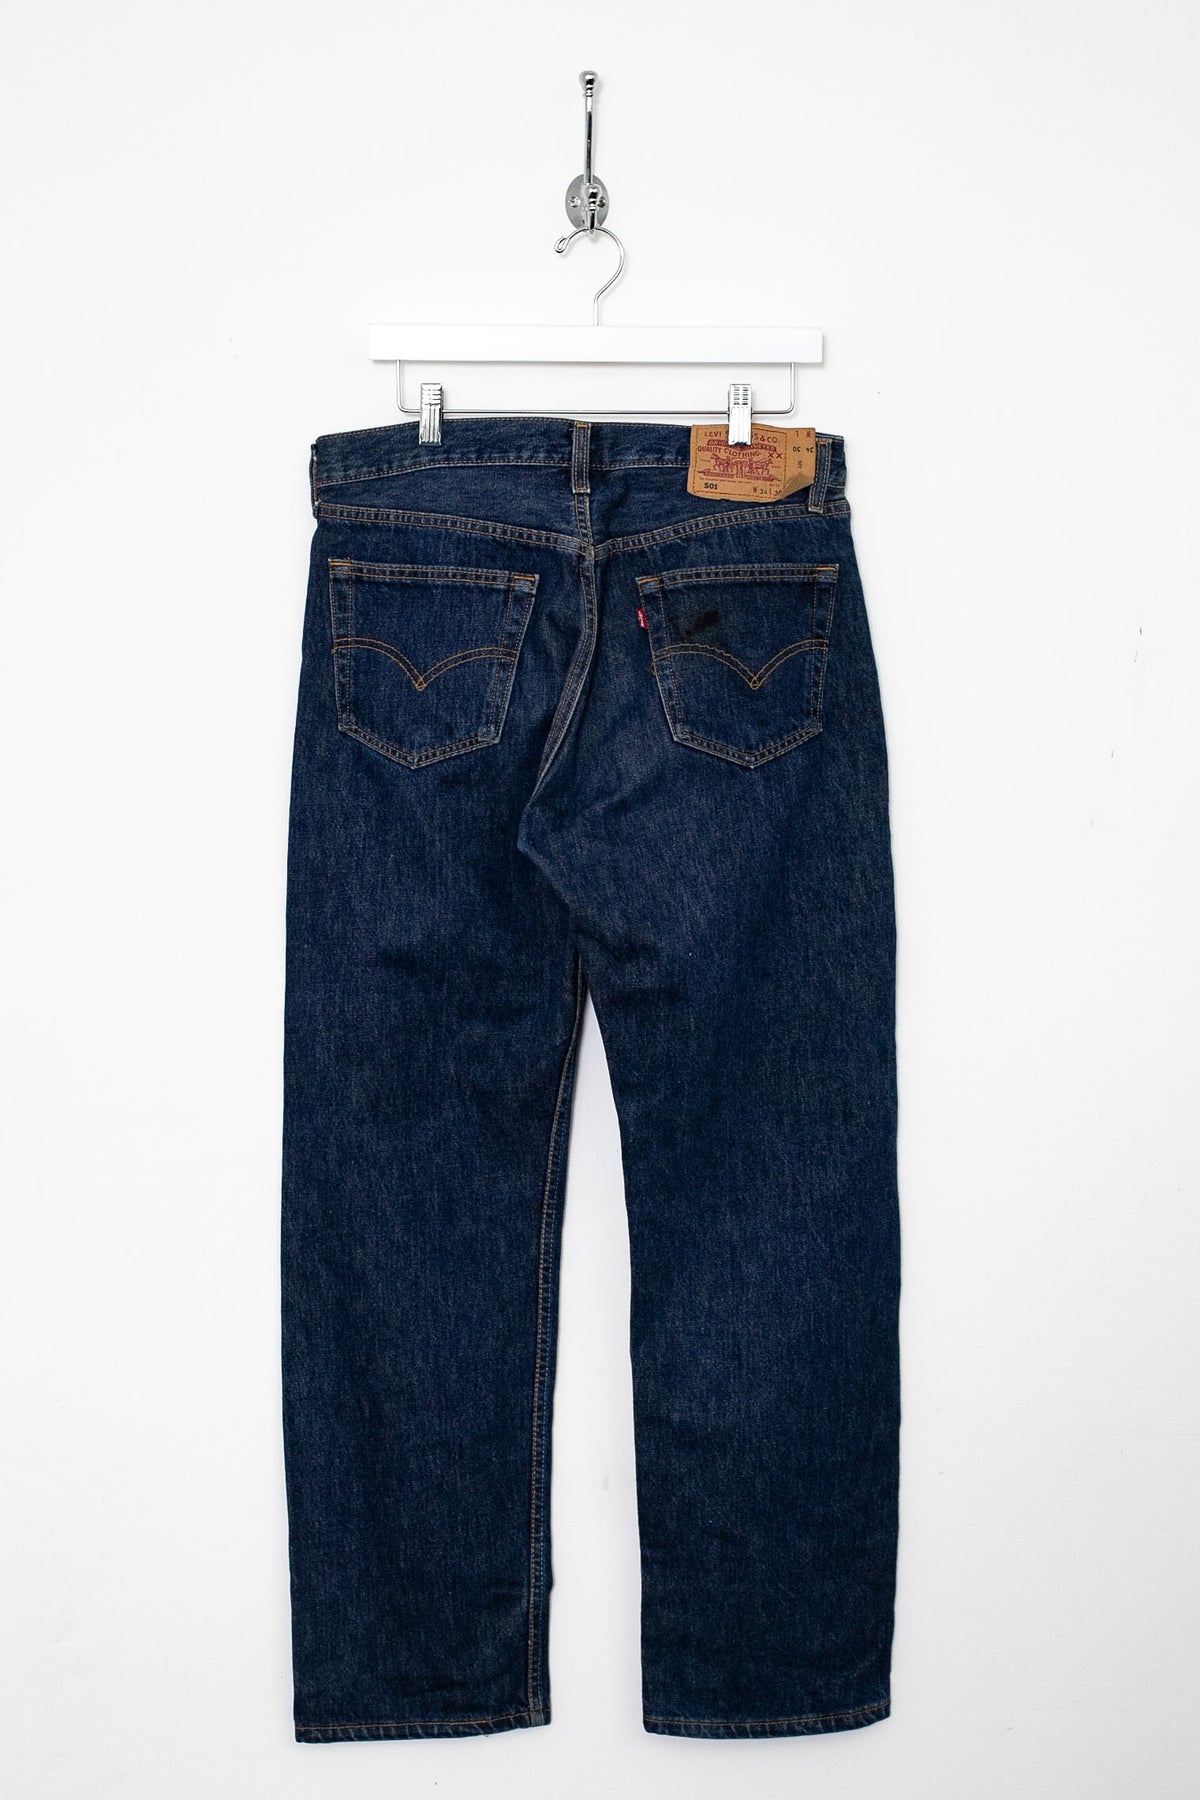 00s Levi's 501 Jeans (M)